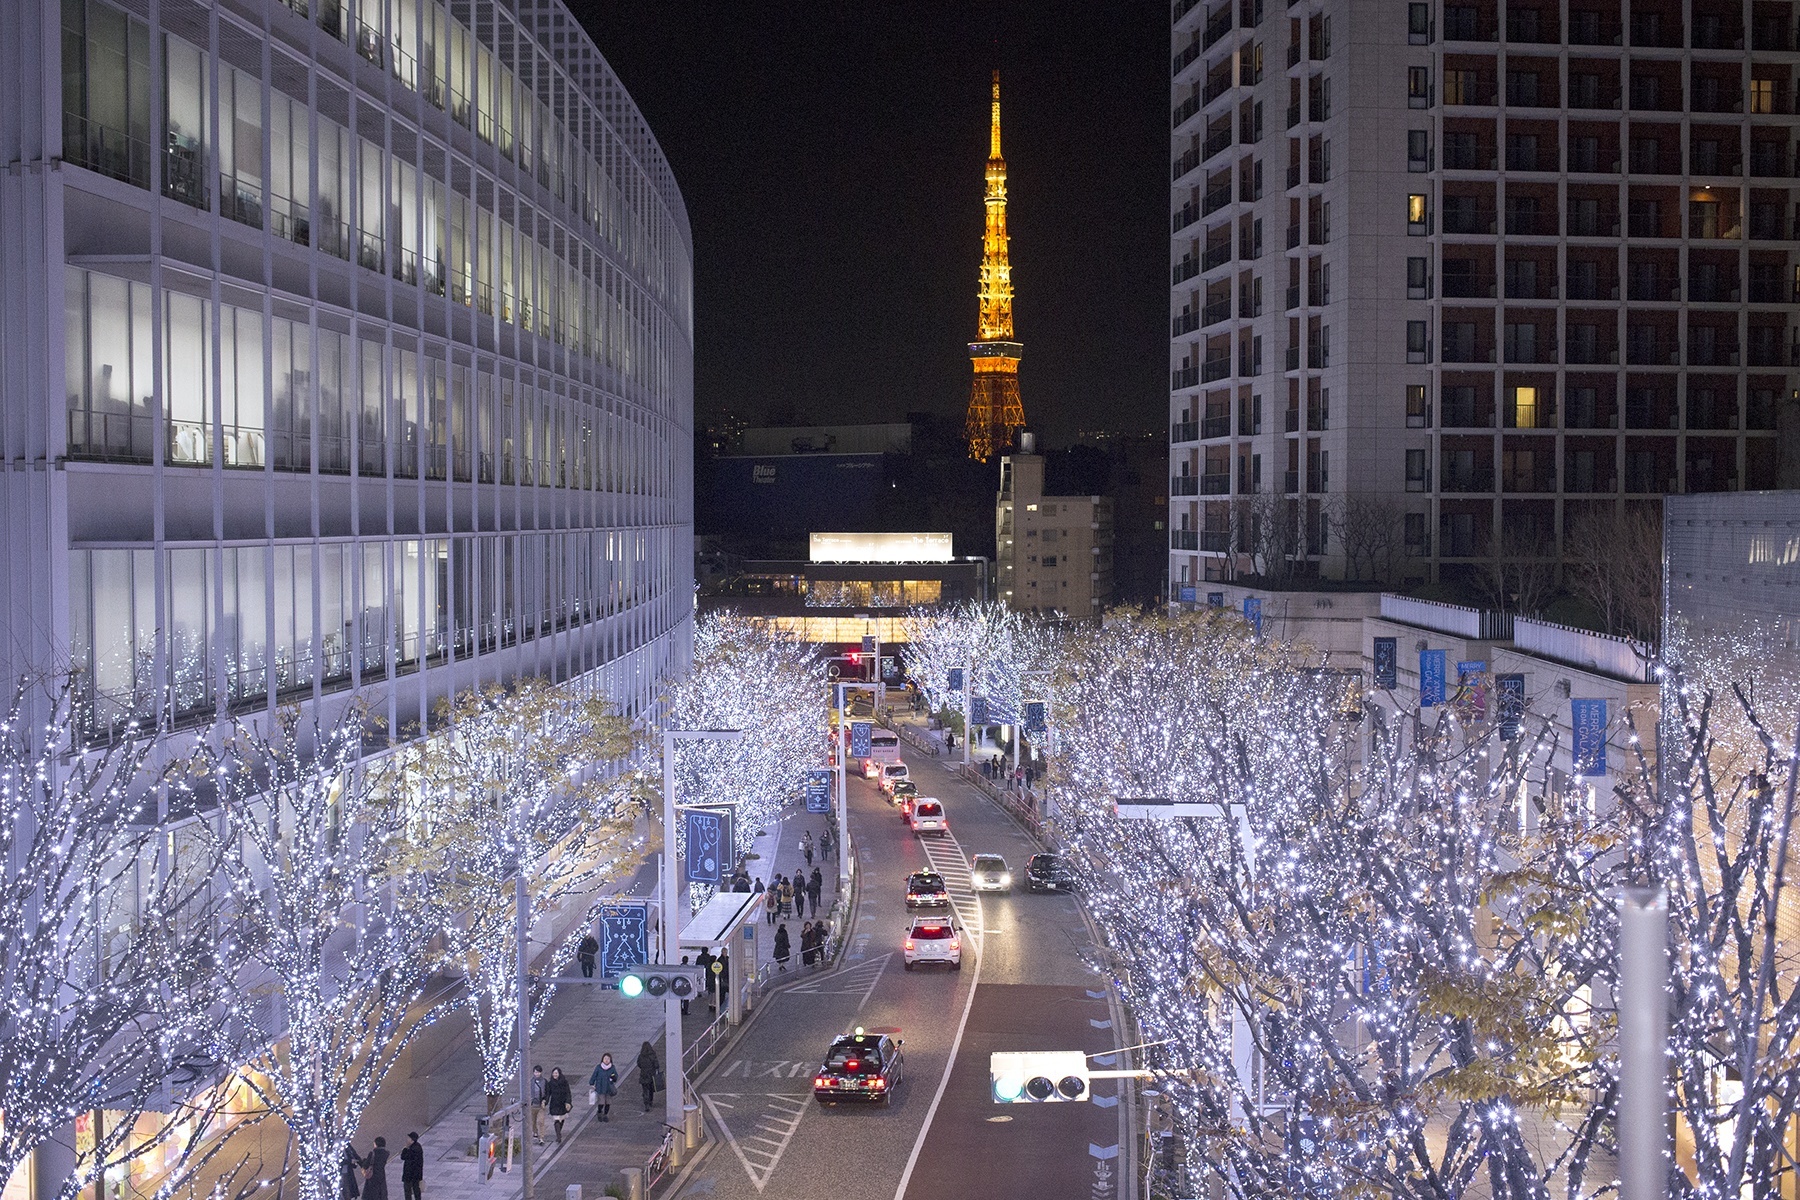 Tokyo Christmas and Christmas lights